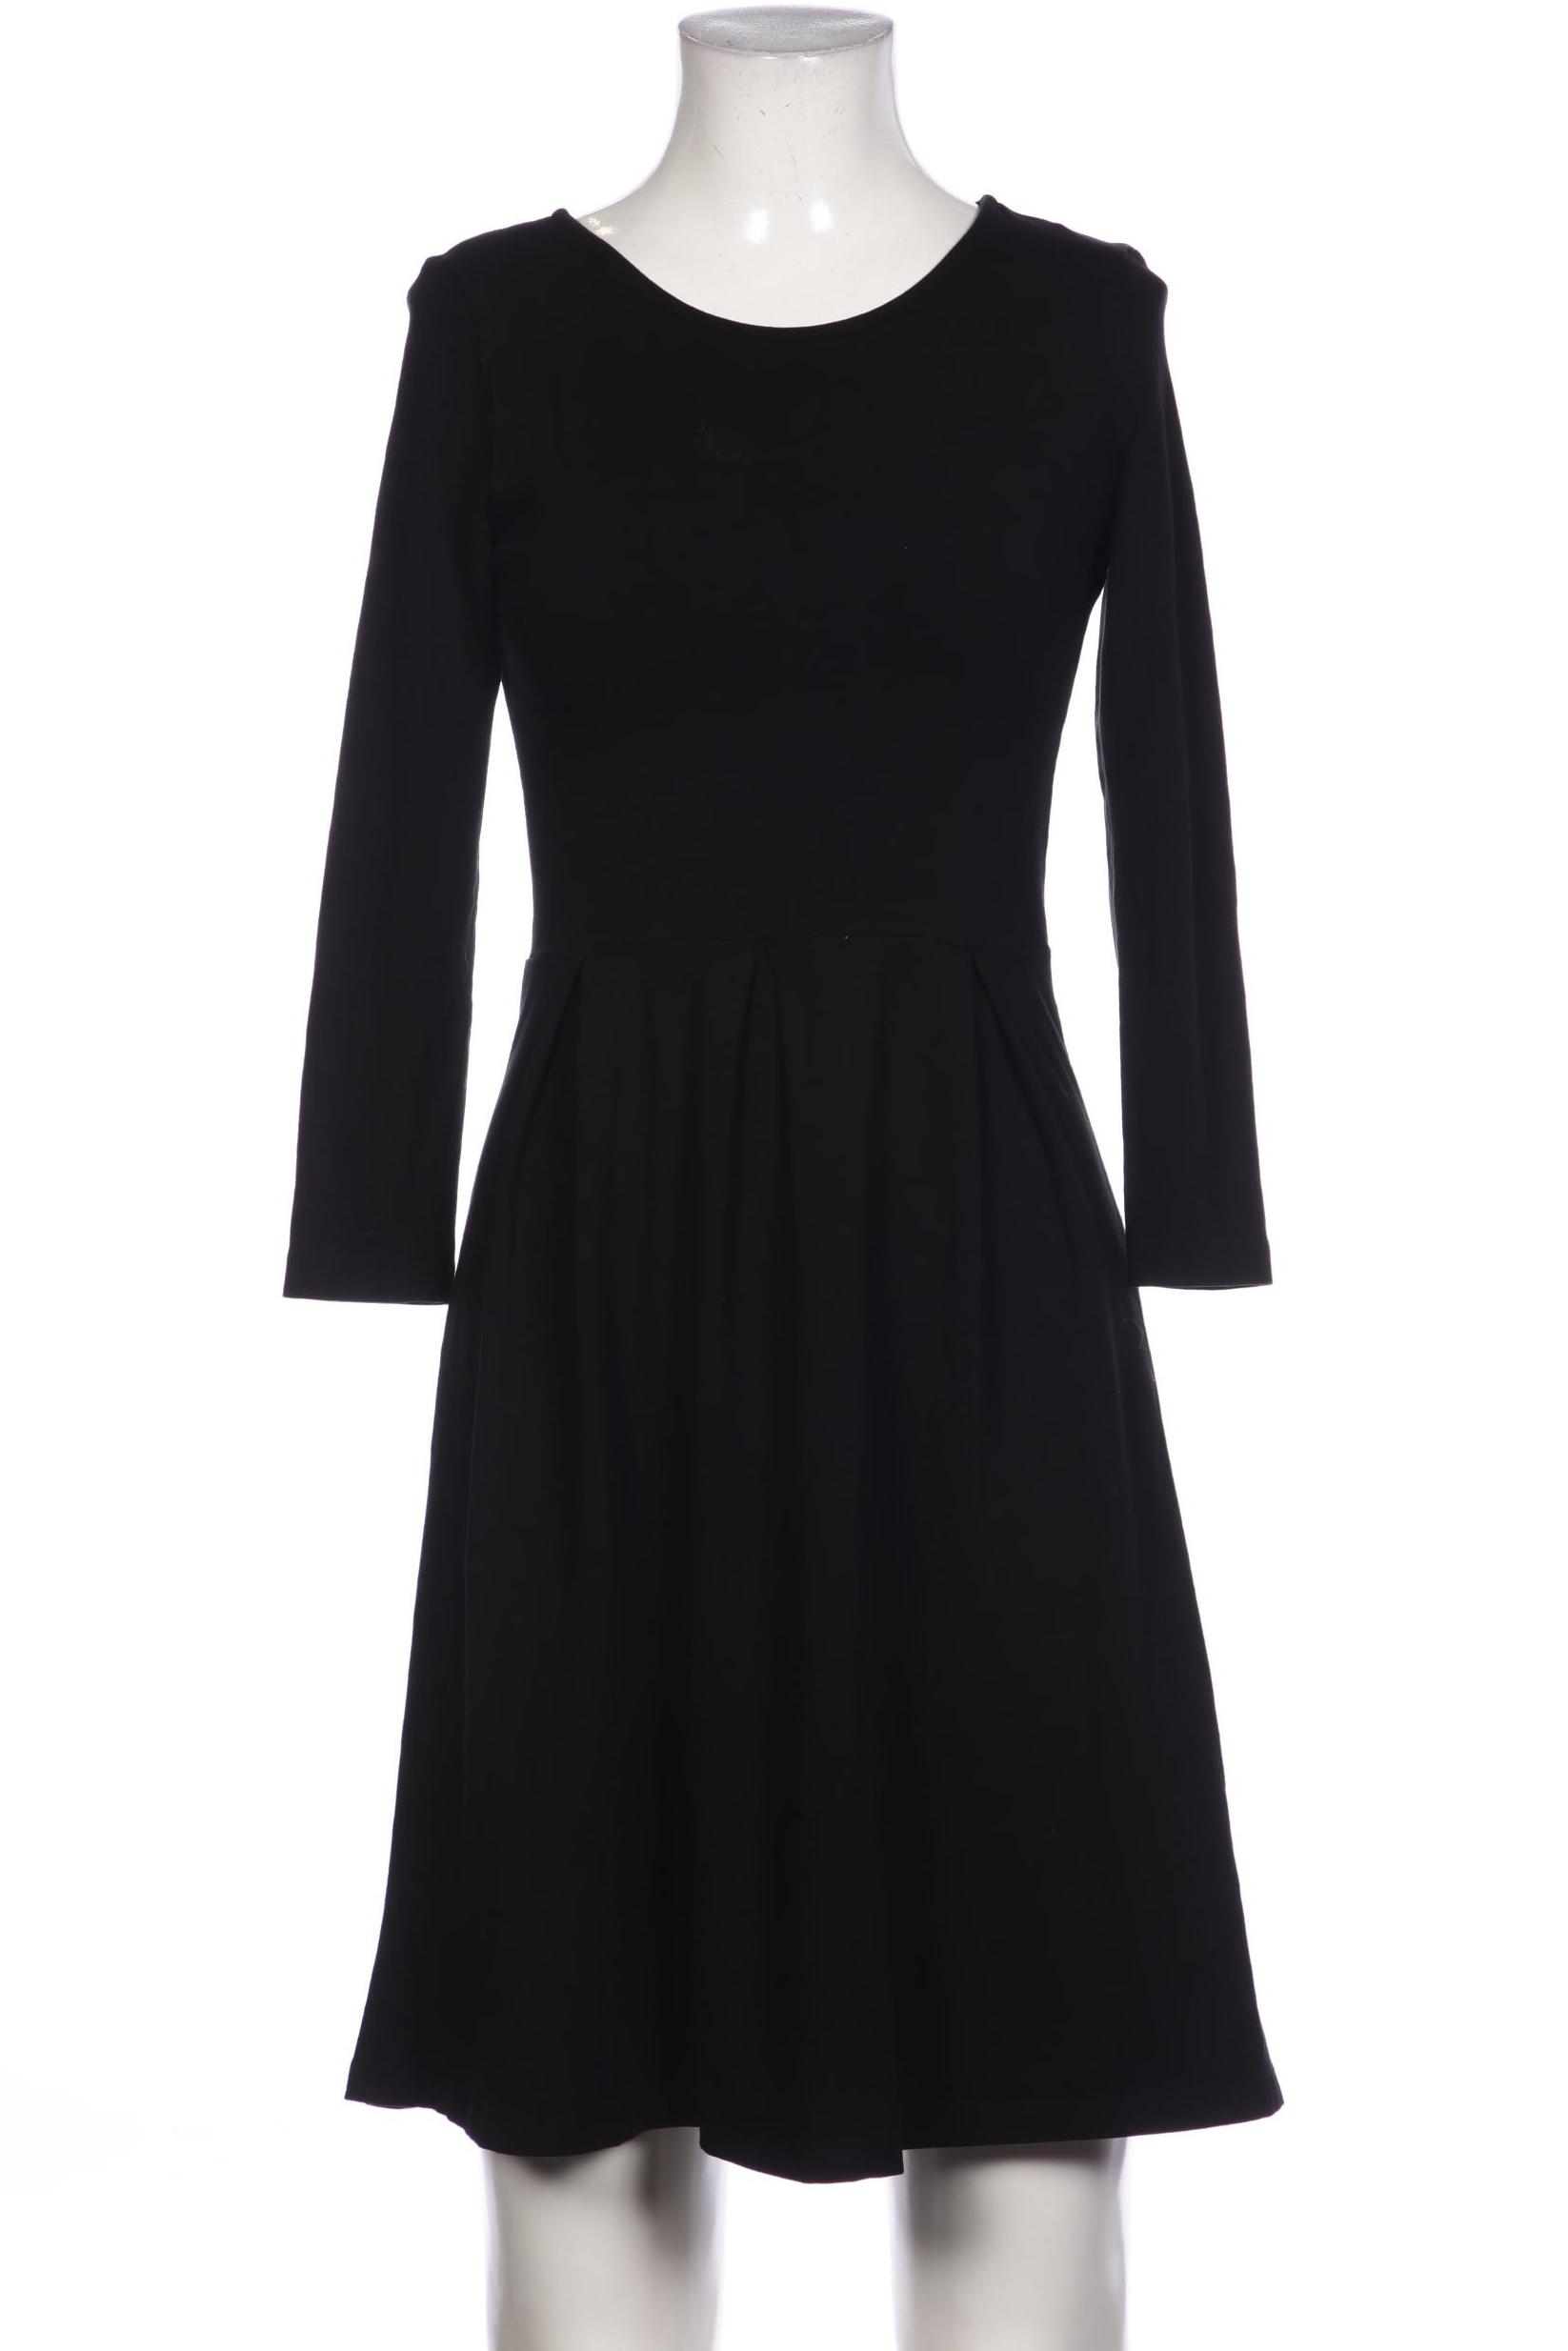 Anna Field Damen Kleid, schwarz, Gr. 34 von Anna Field